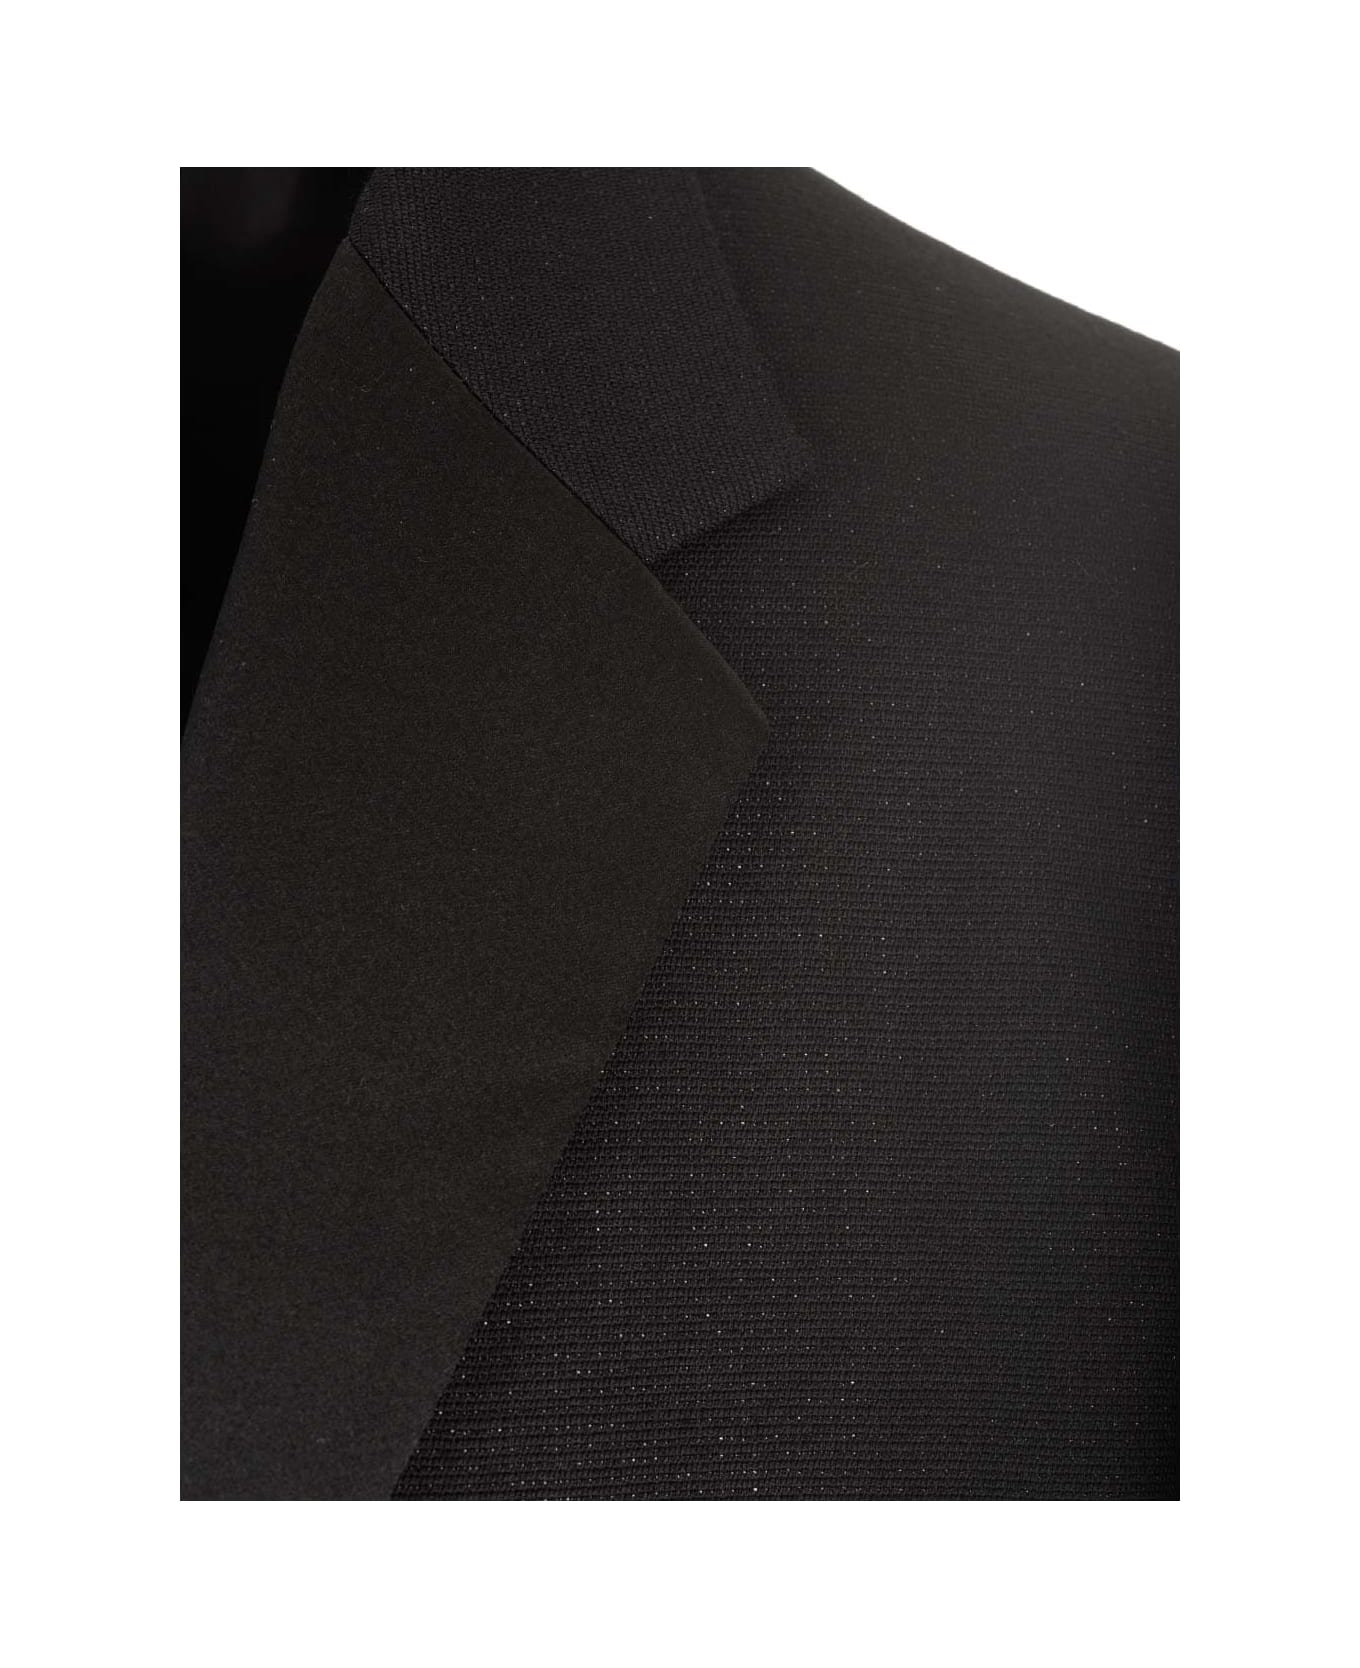 Givenchy Black Wool Jacket - BLACK ブレザー